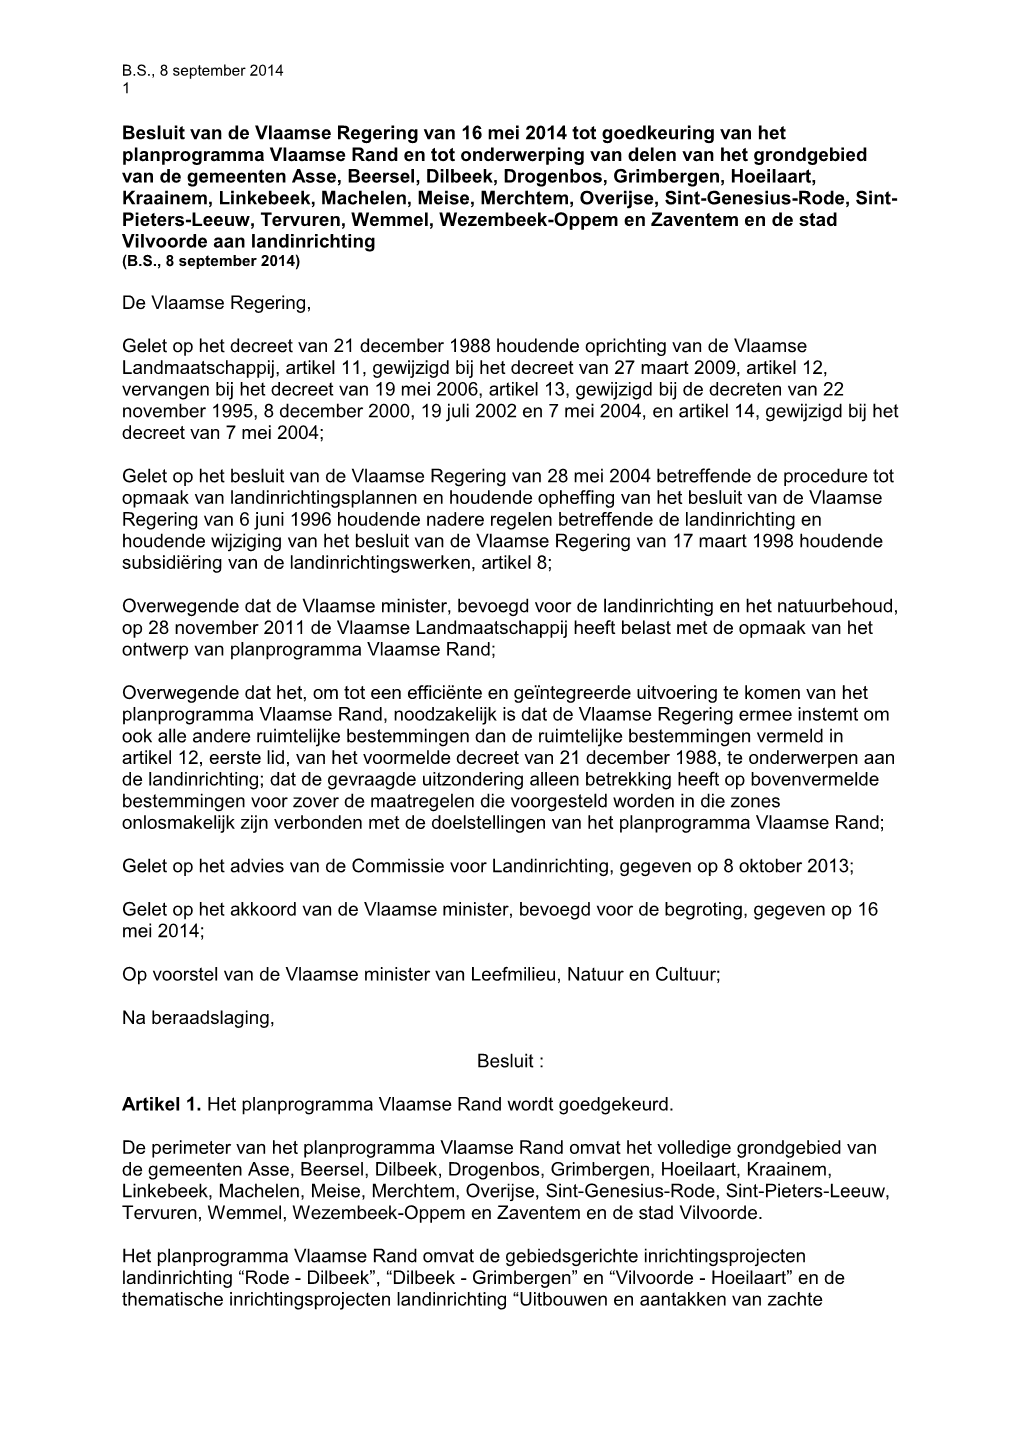 Besluit Van De Vlaamse Regering Van 16 Mei 2014 Tot Goedkeuring Van Het Planprogramma Vlaamse Rand En Tot Onderwerping Van Delen